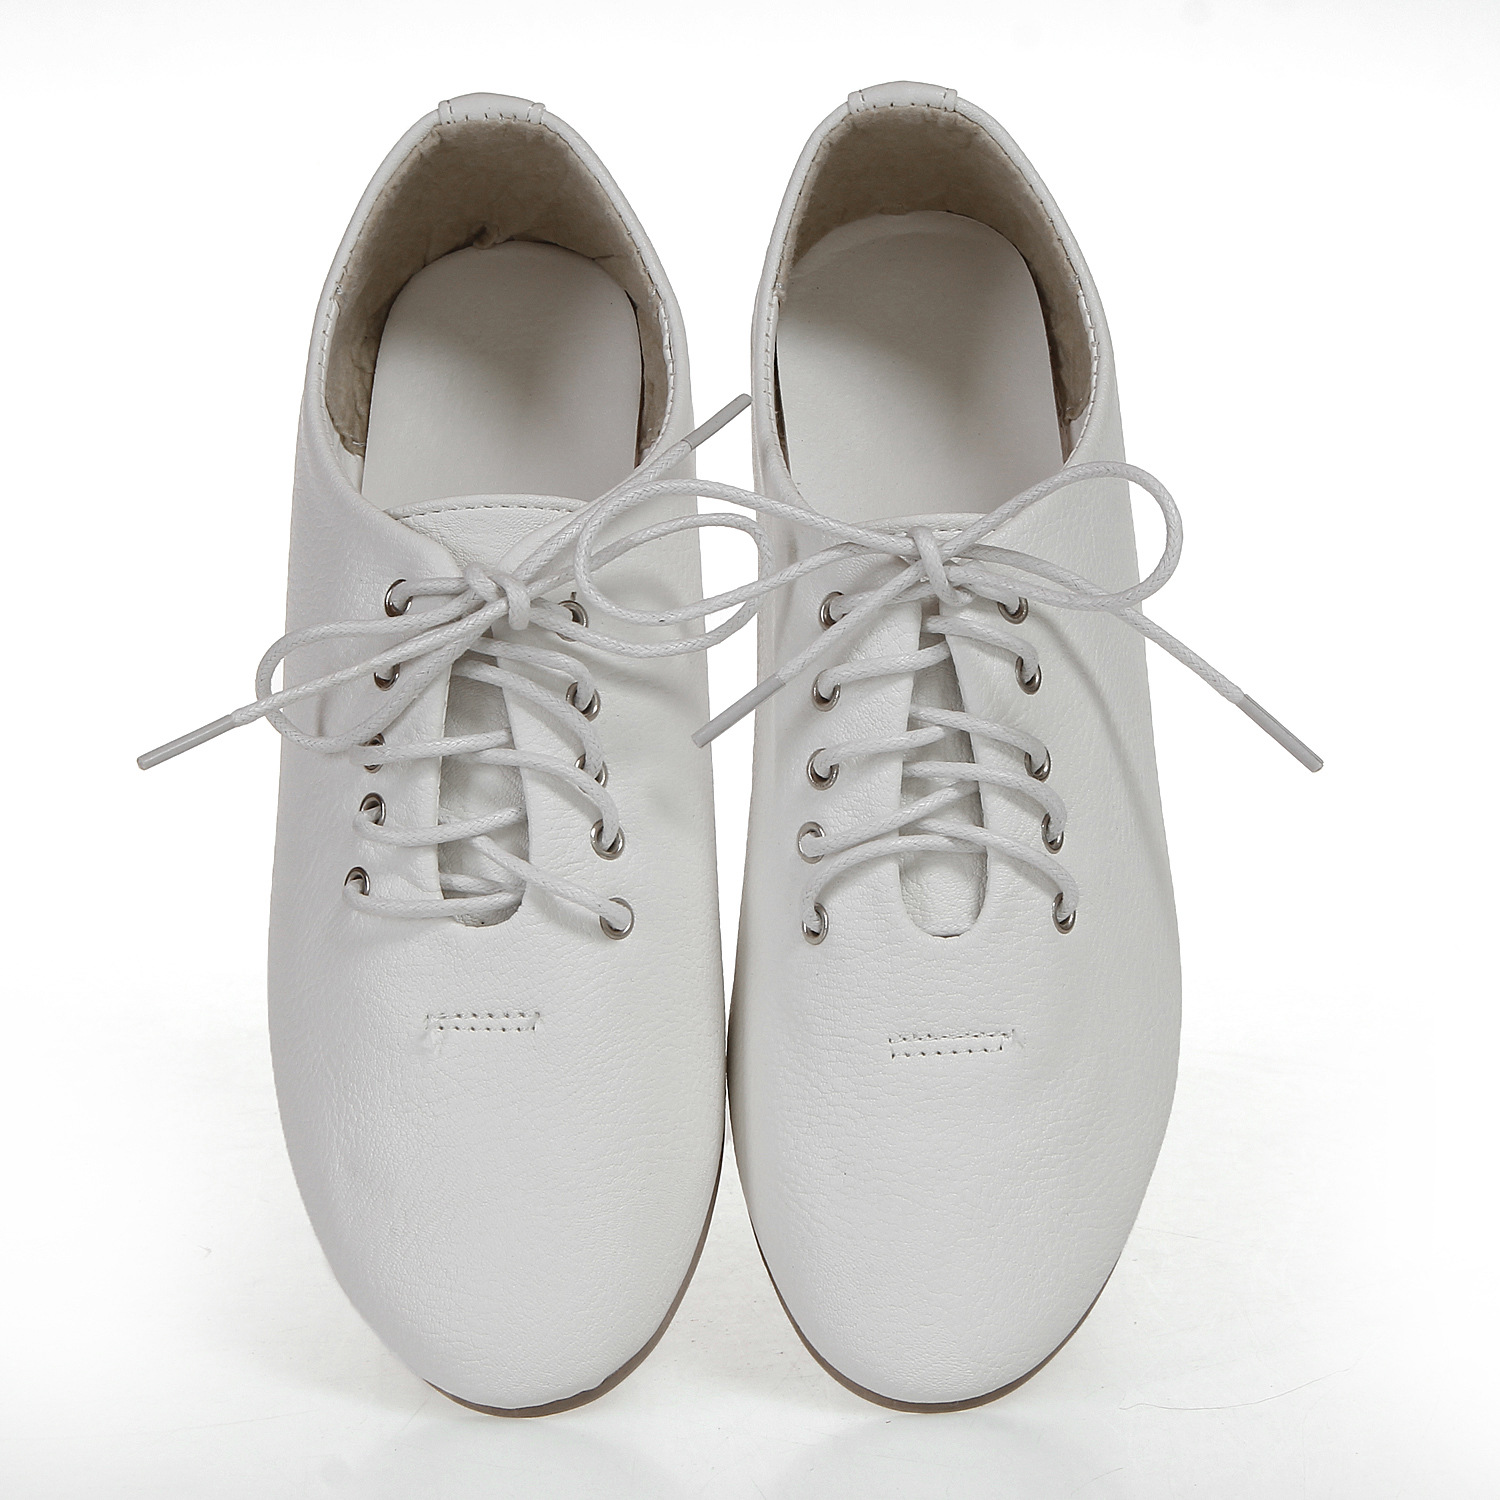 国招商免费代理加盟淘宝创业一件代发小白鞋舒